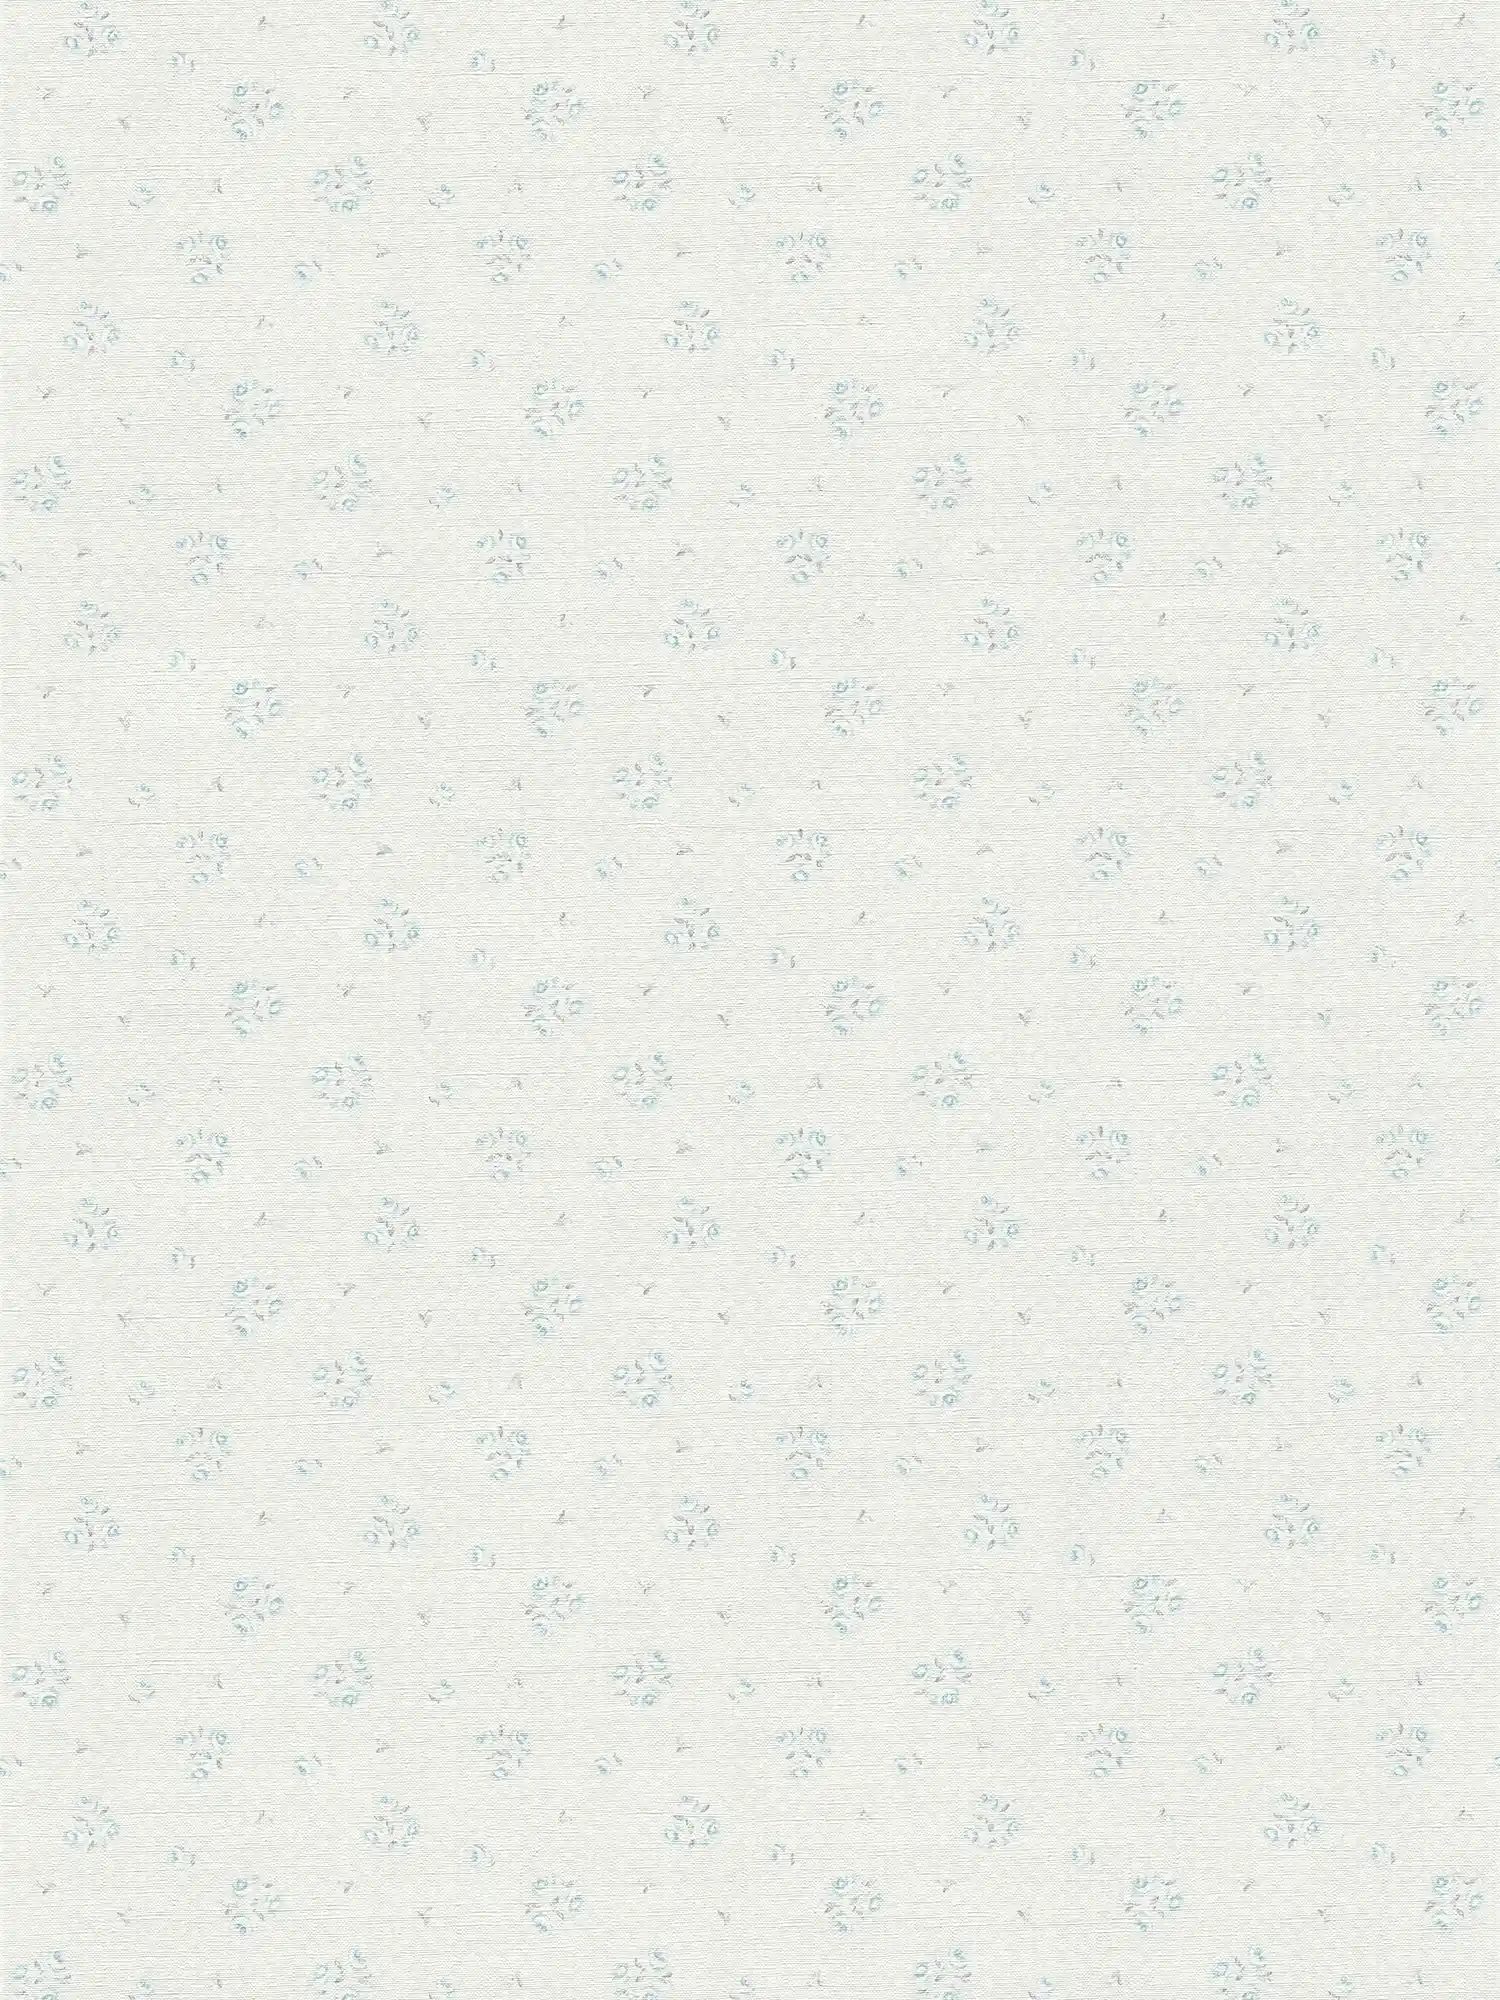 Carta da parati per case di campagna con motivi floreali in stile Shabby Chic - grigio chiaro, blu, bianco
